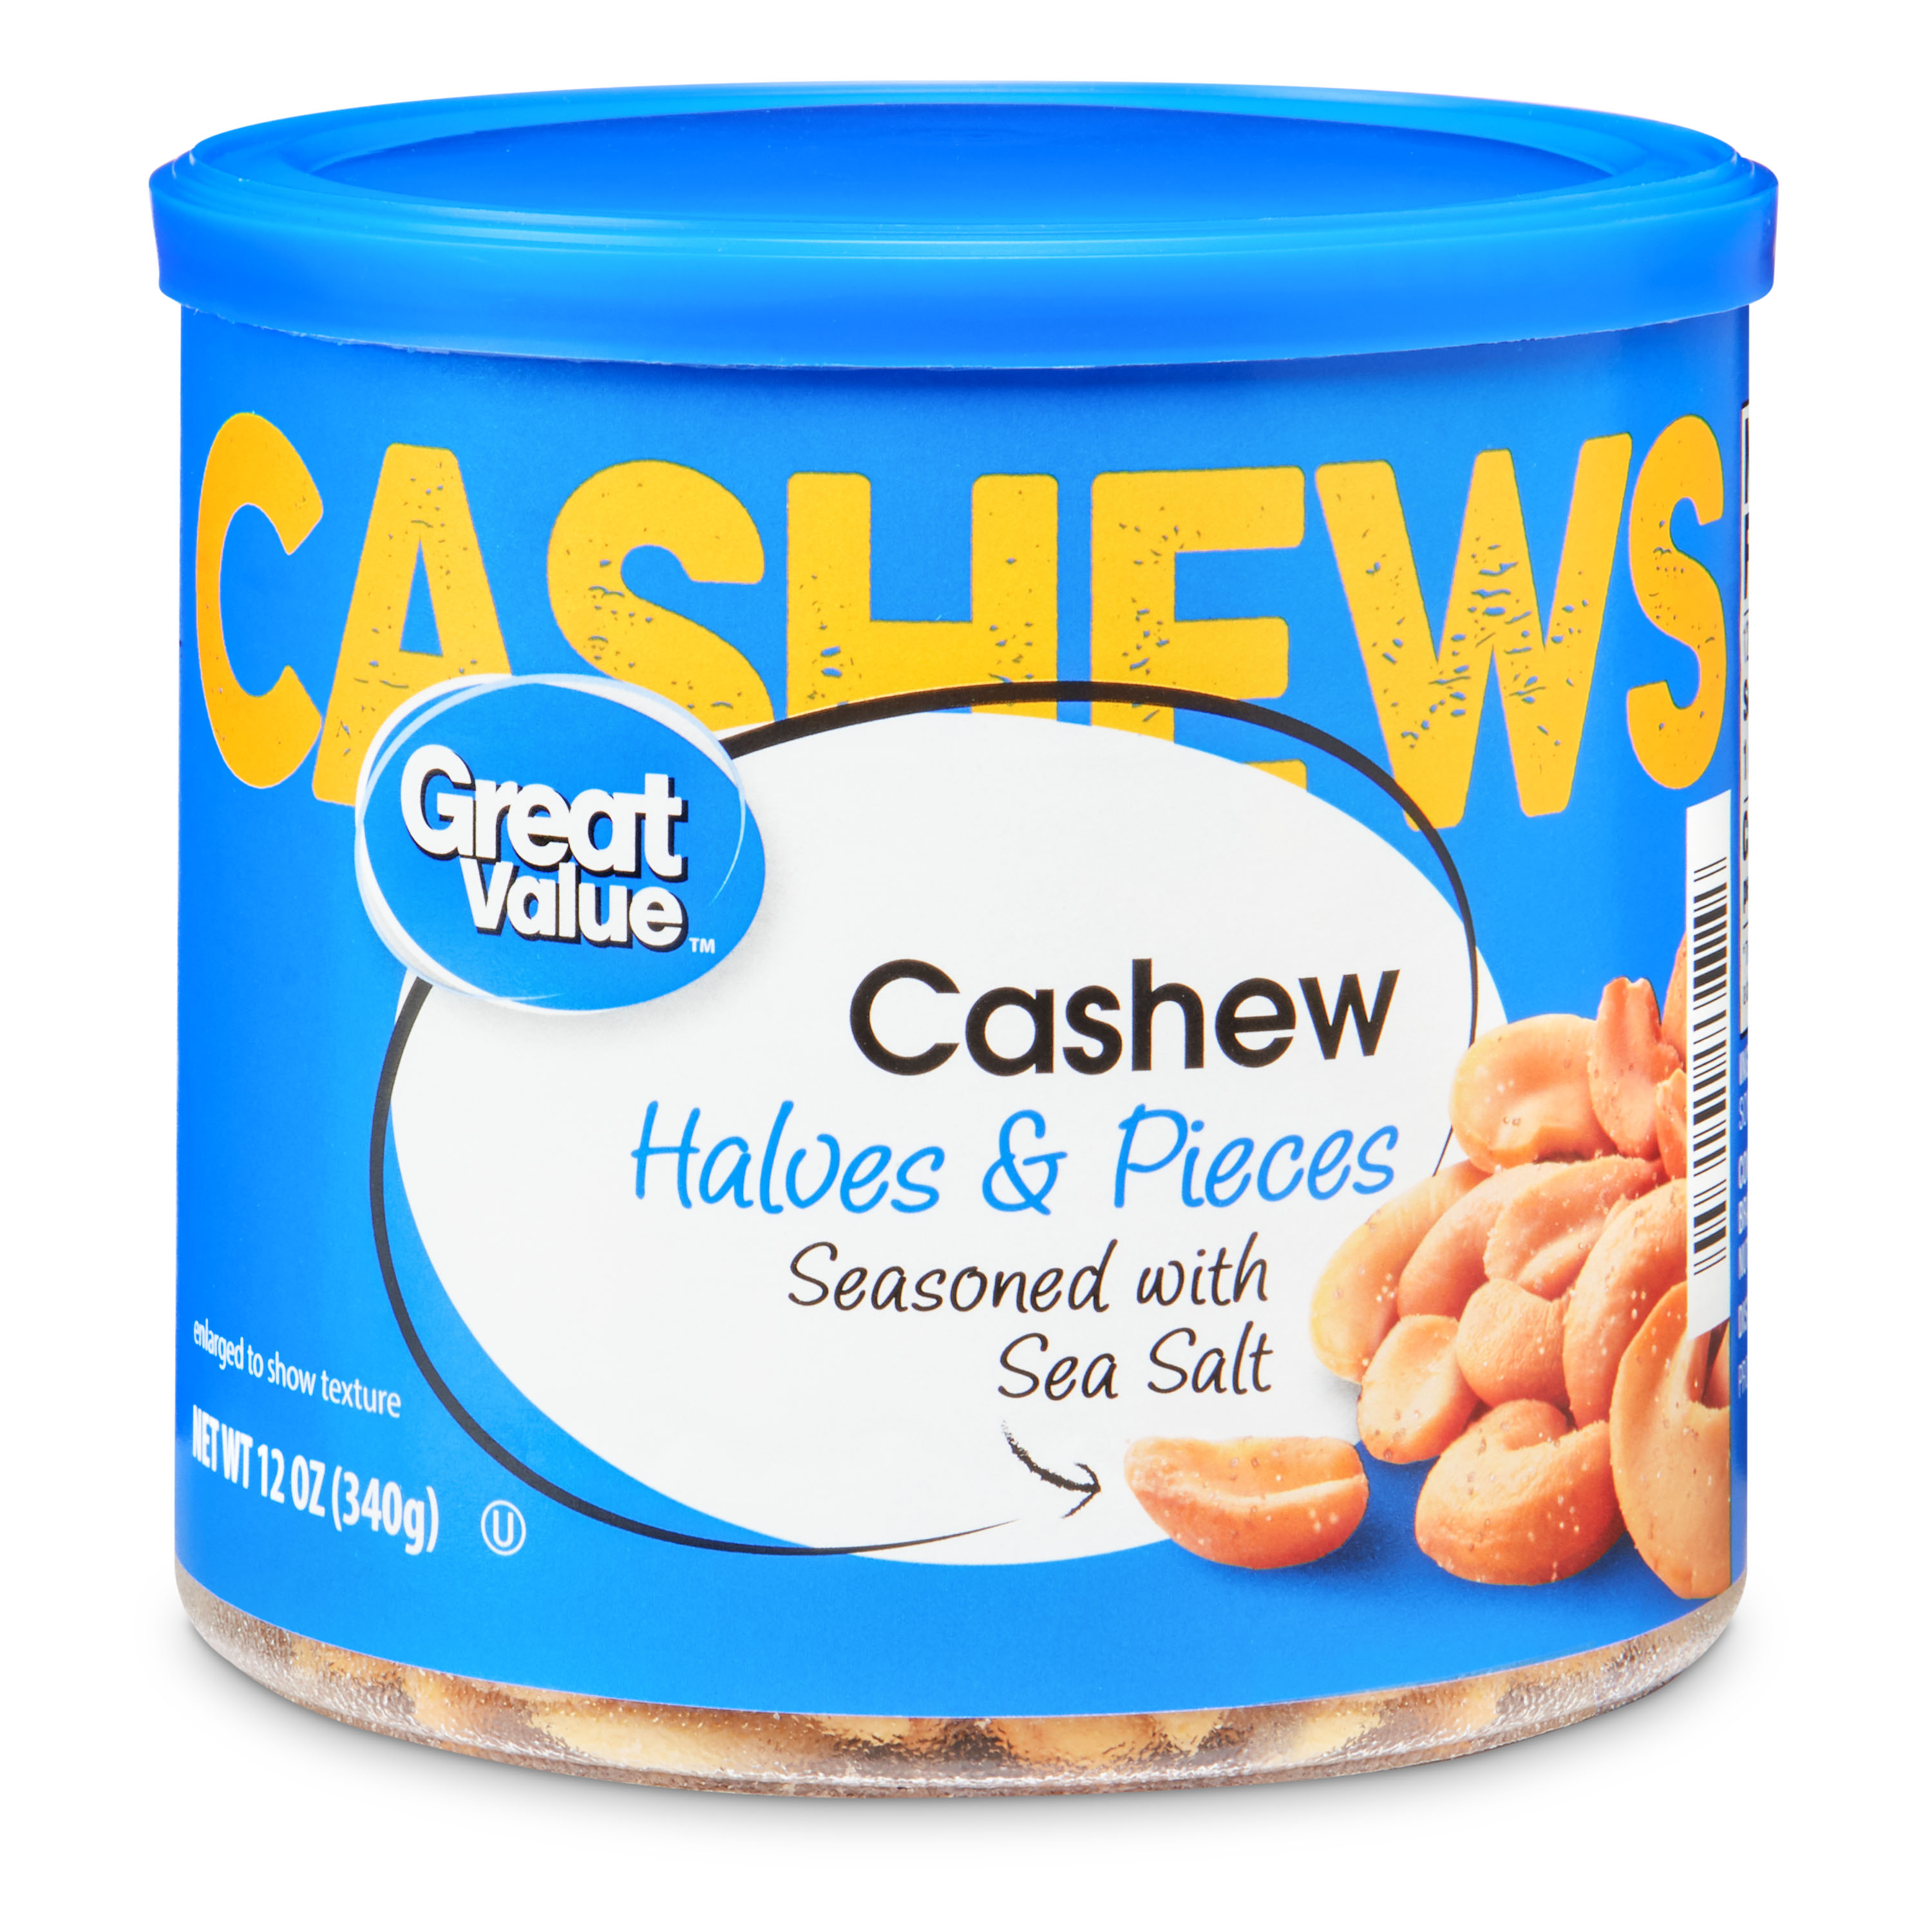 Great Value Cashew Halves & Pieces, 12 Oz Image